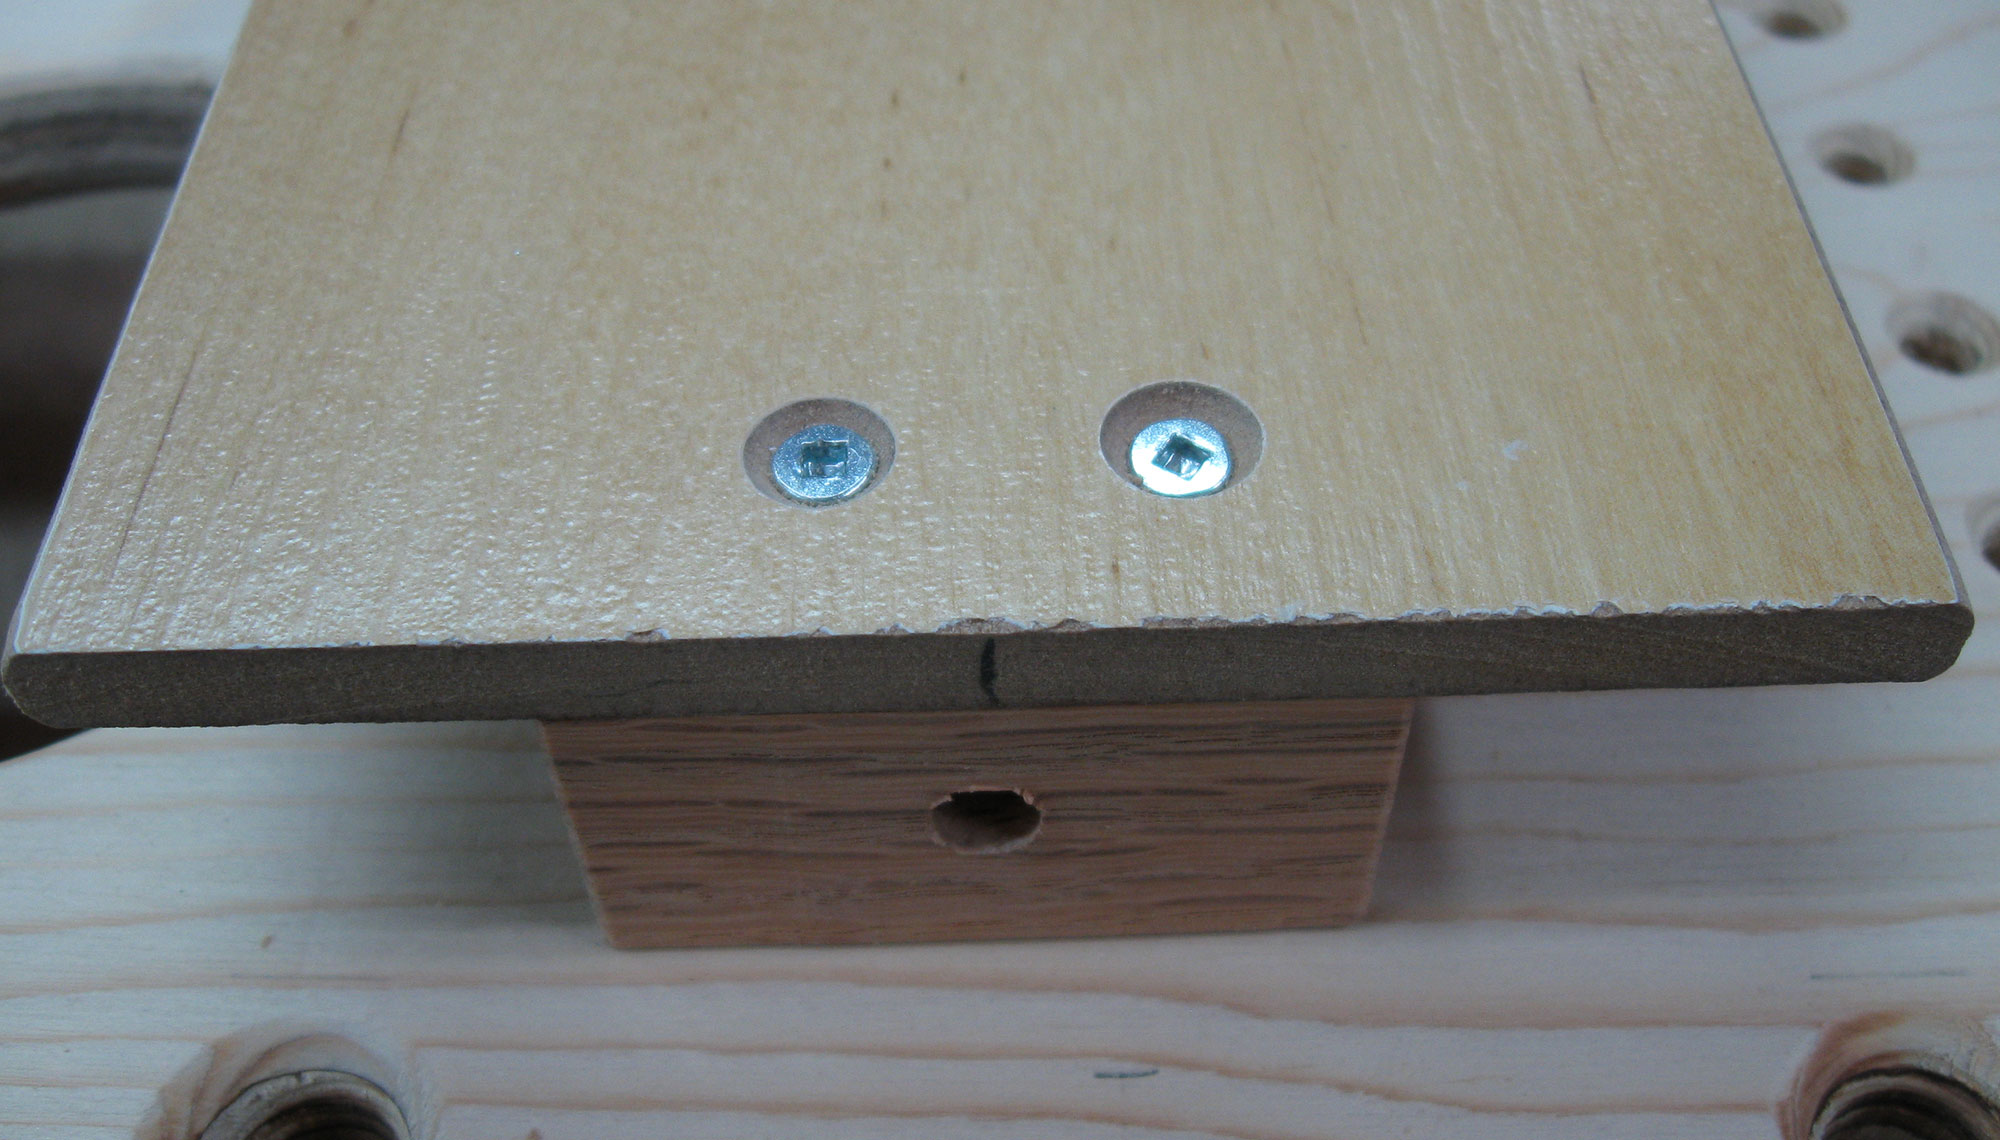 Hardwood block secured to jig using two flat-head wood screws.